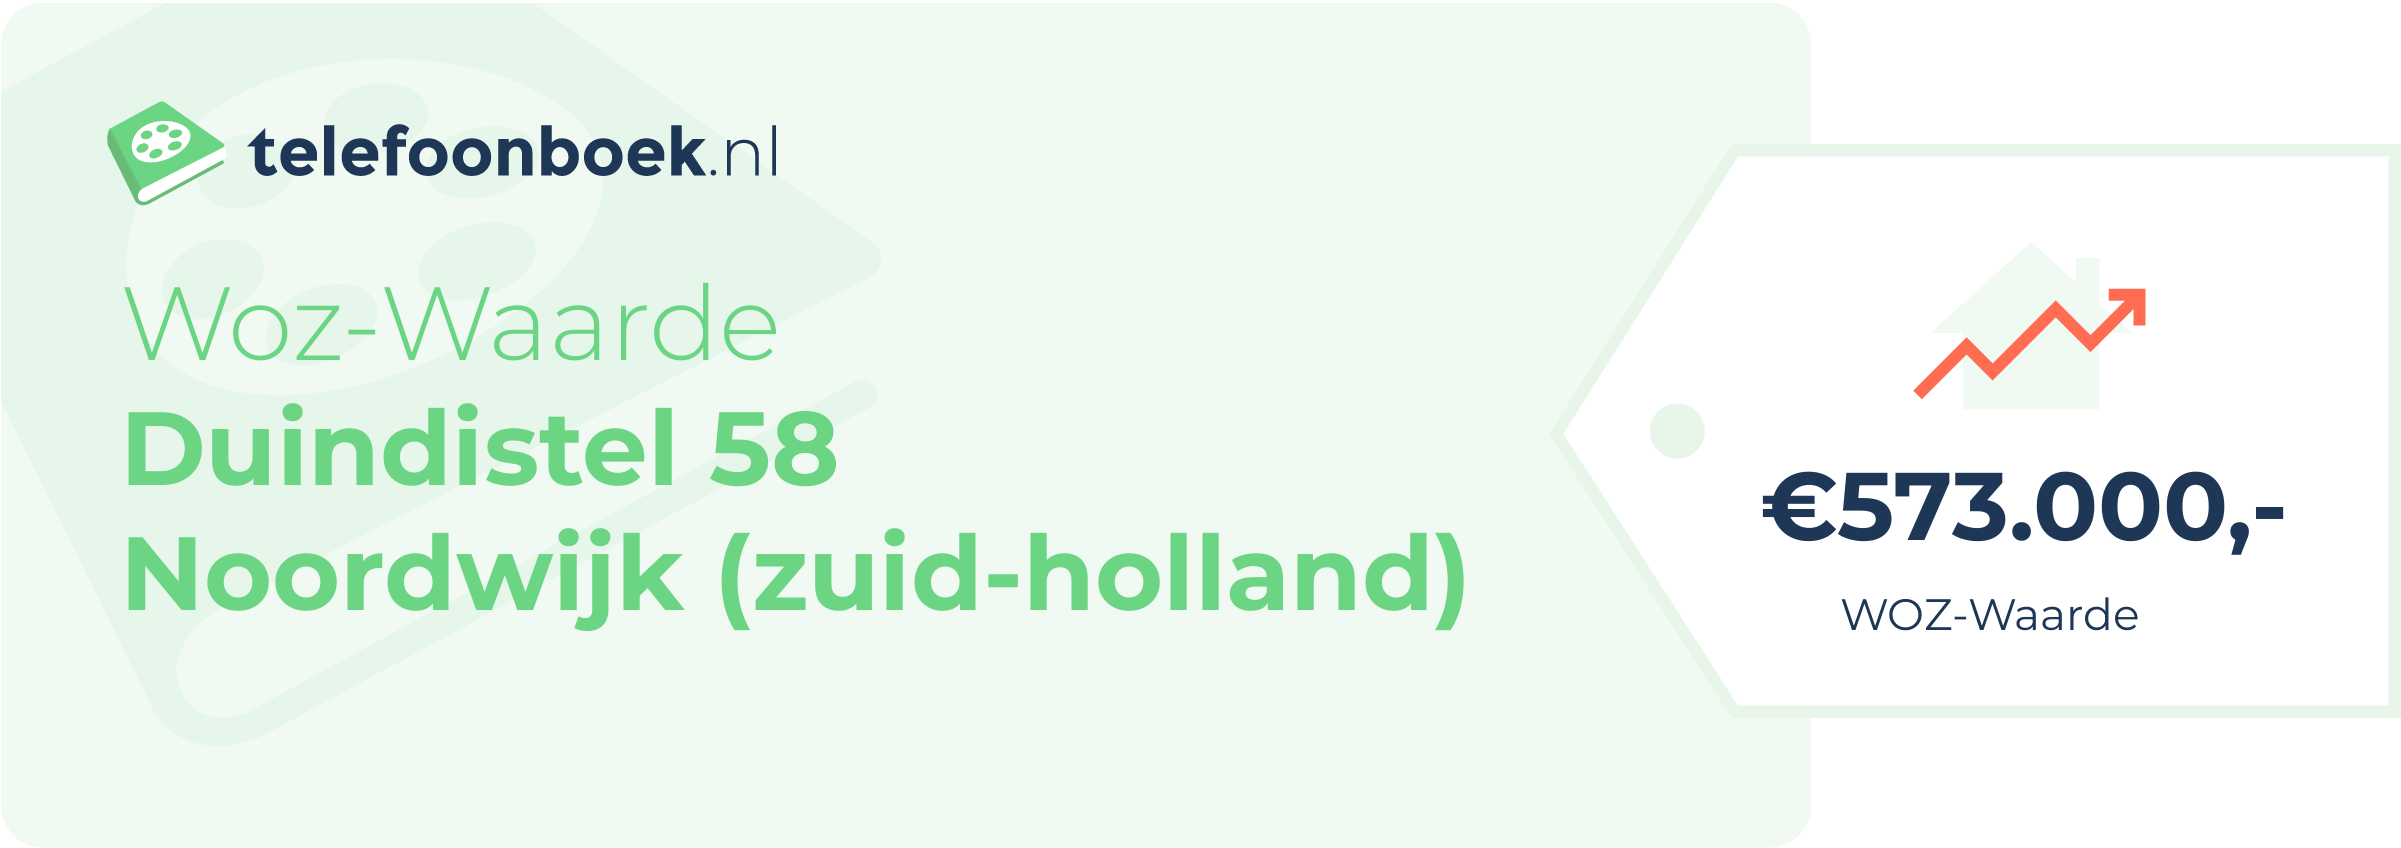 WOZ-waarde Duindistel 58 Noordwijk (Zuid-Holland)